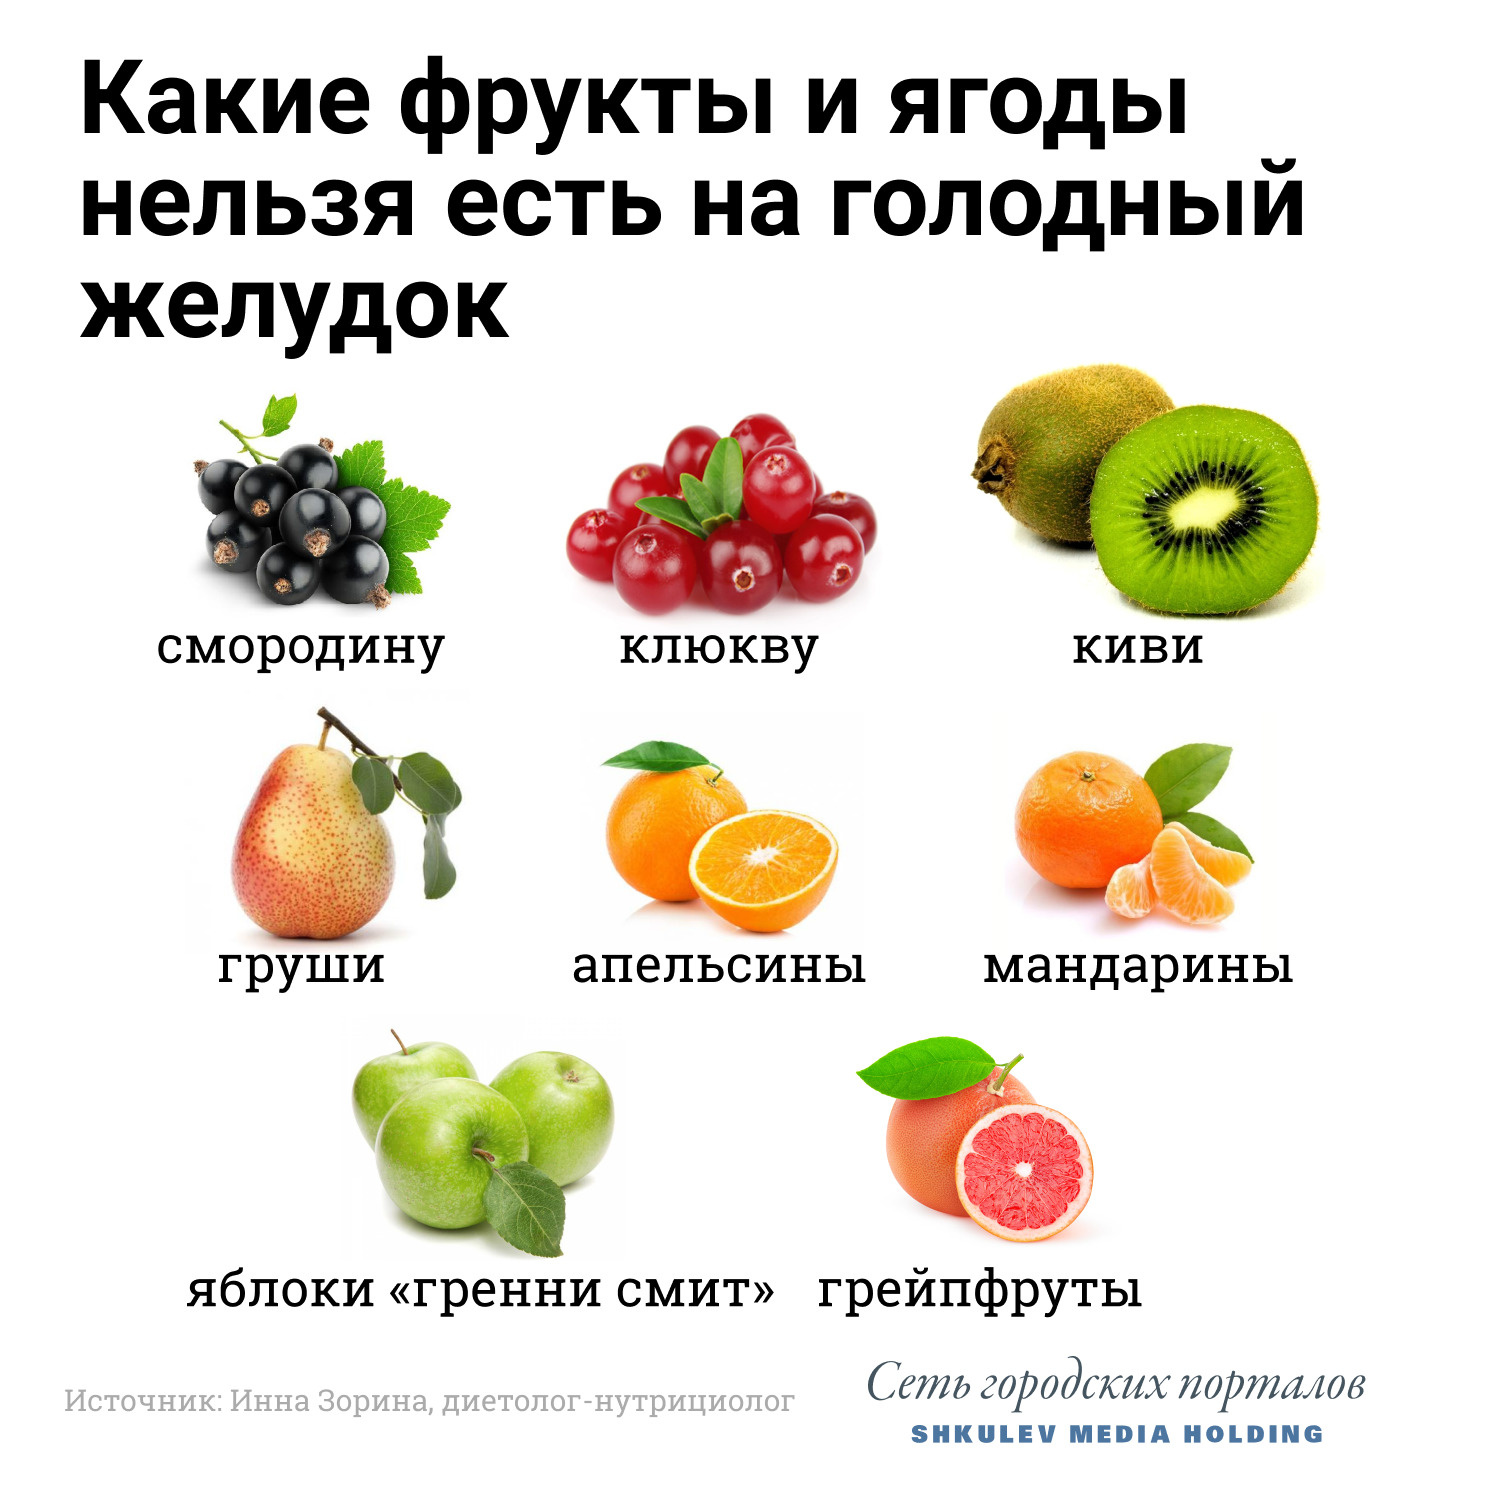 Эти фрукты и ягоды лучше не есть на голодный желудок